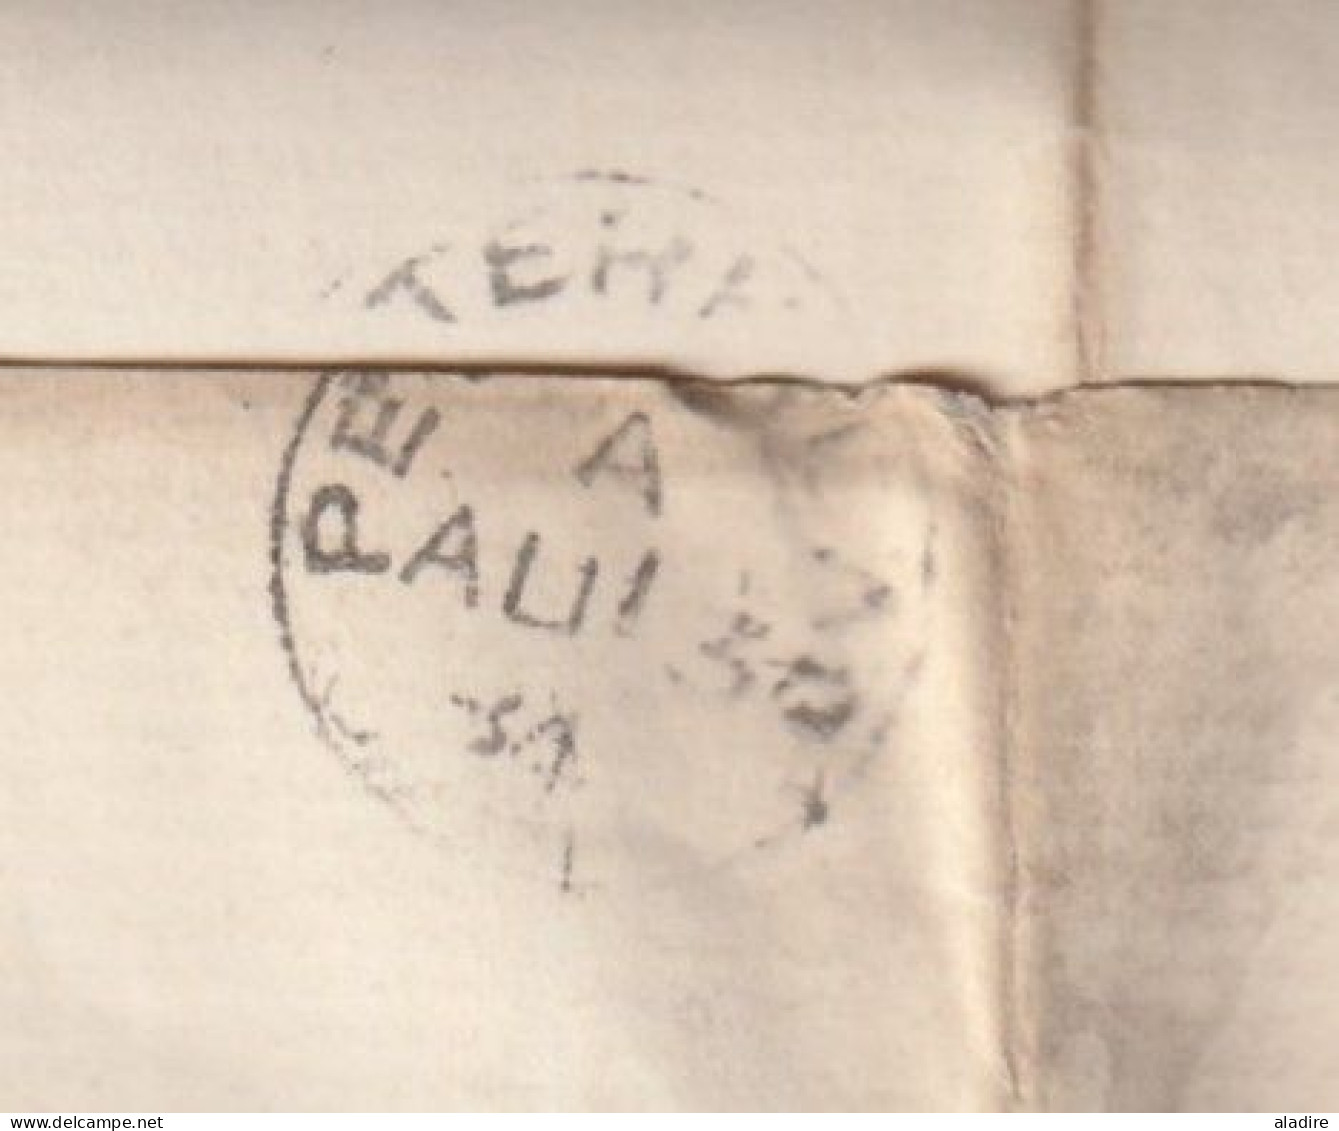 QV - 1884 - Imprimé Et Feuillet De Réponse De ABERDEEN, Ecosse Vers PETERHEAD (to The Inspector Of Poor) - 1/2 Penny - Covers & Documents